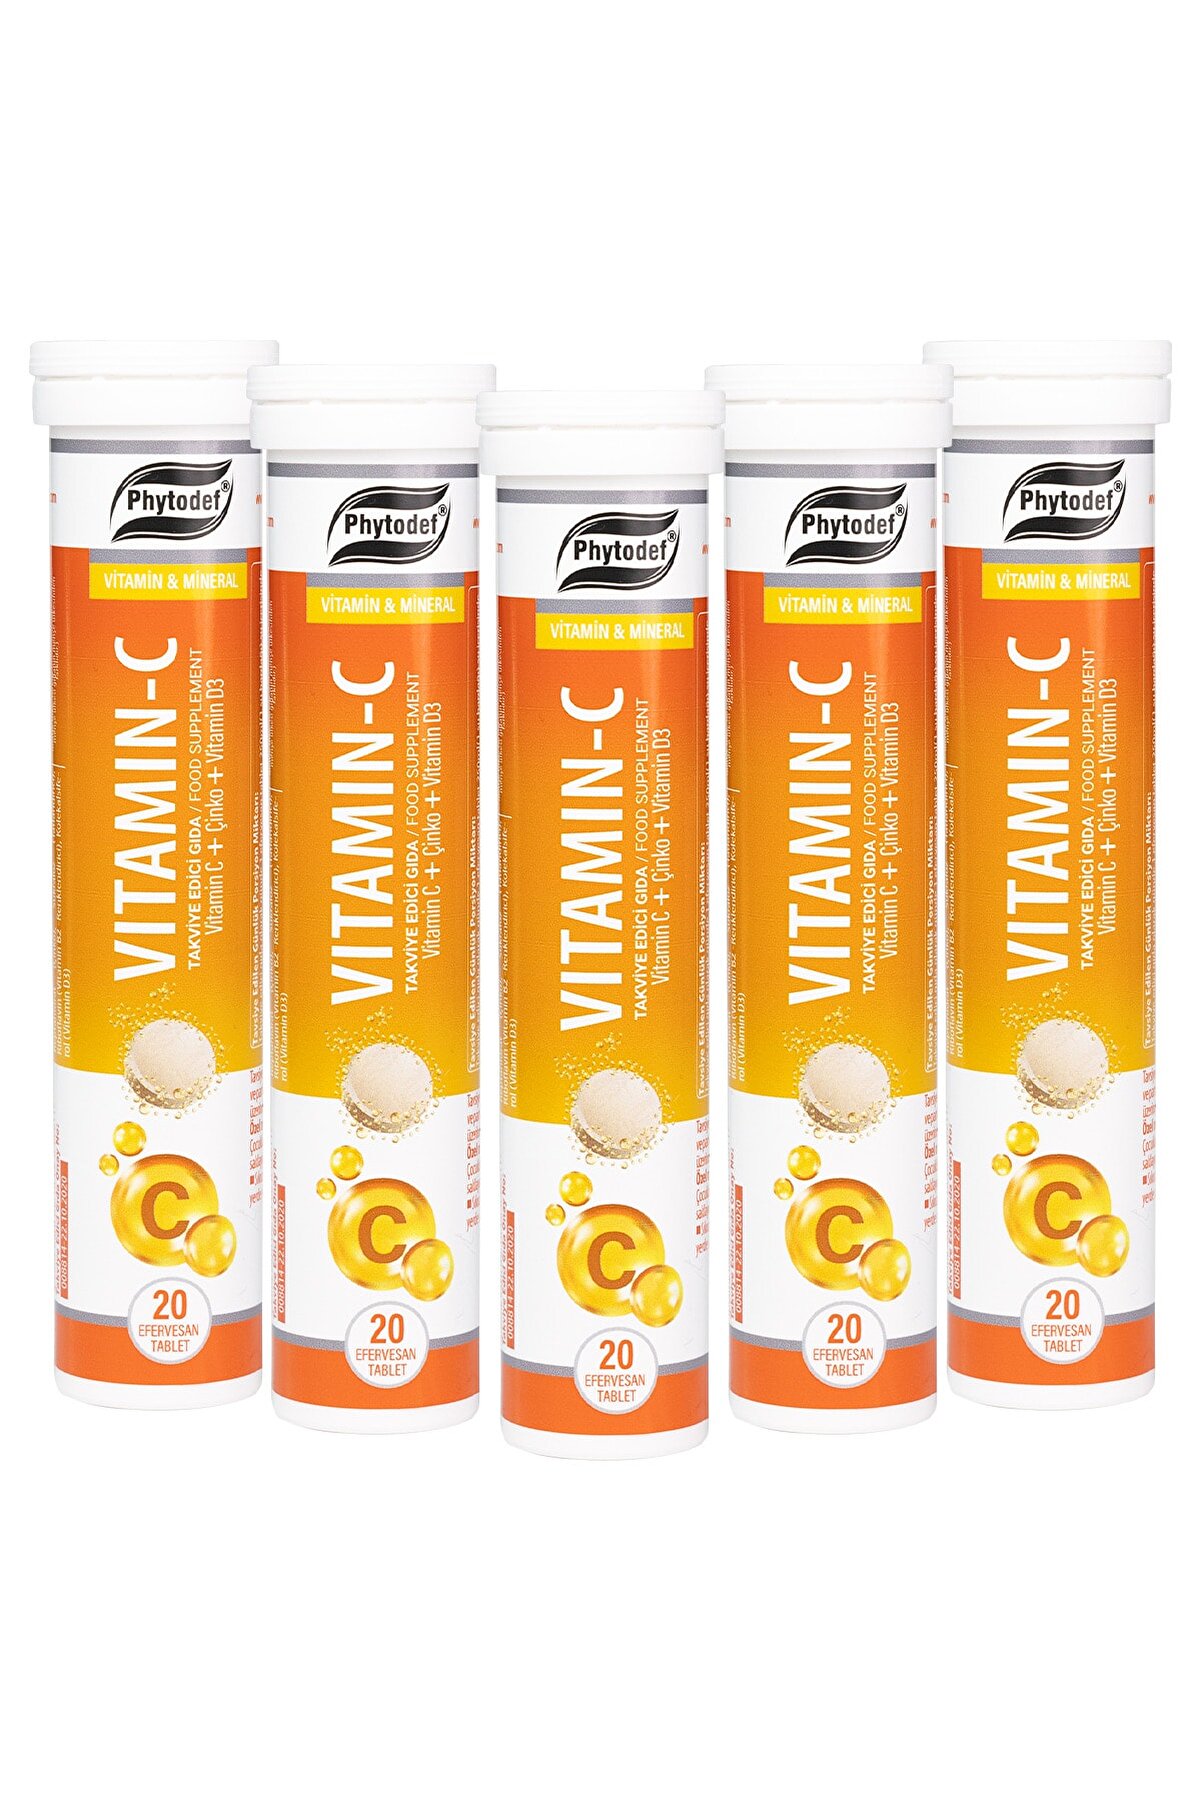 Phytodef Vitamin C + Çinko + Vitamin D3 Efervesan Tablet - 20 Adet X 5 Adet (Portakal Aromalı)